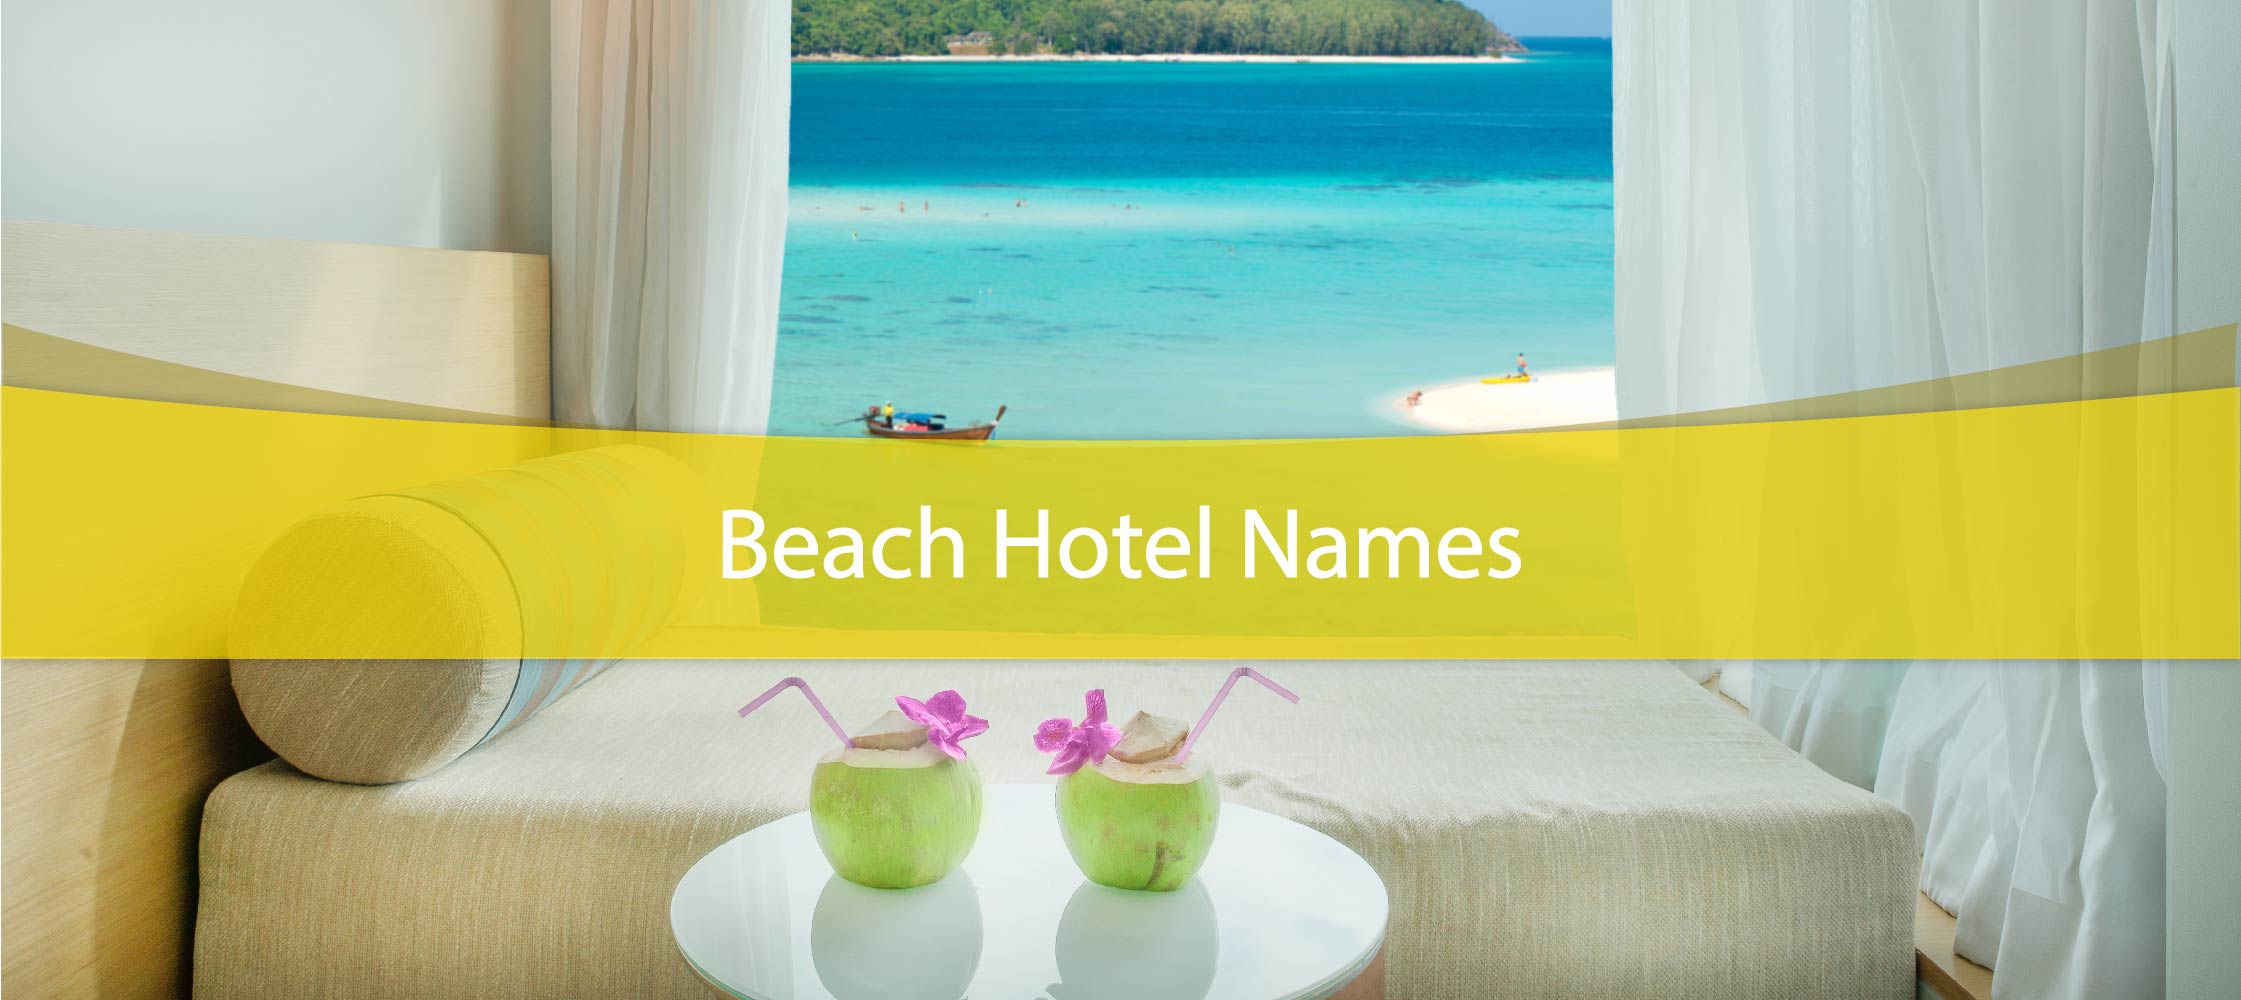 Beach Hotel Names